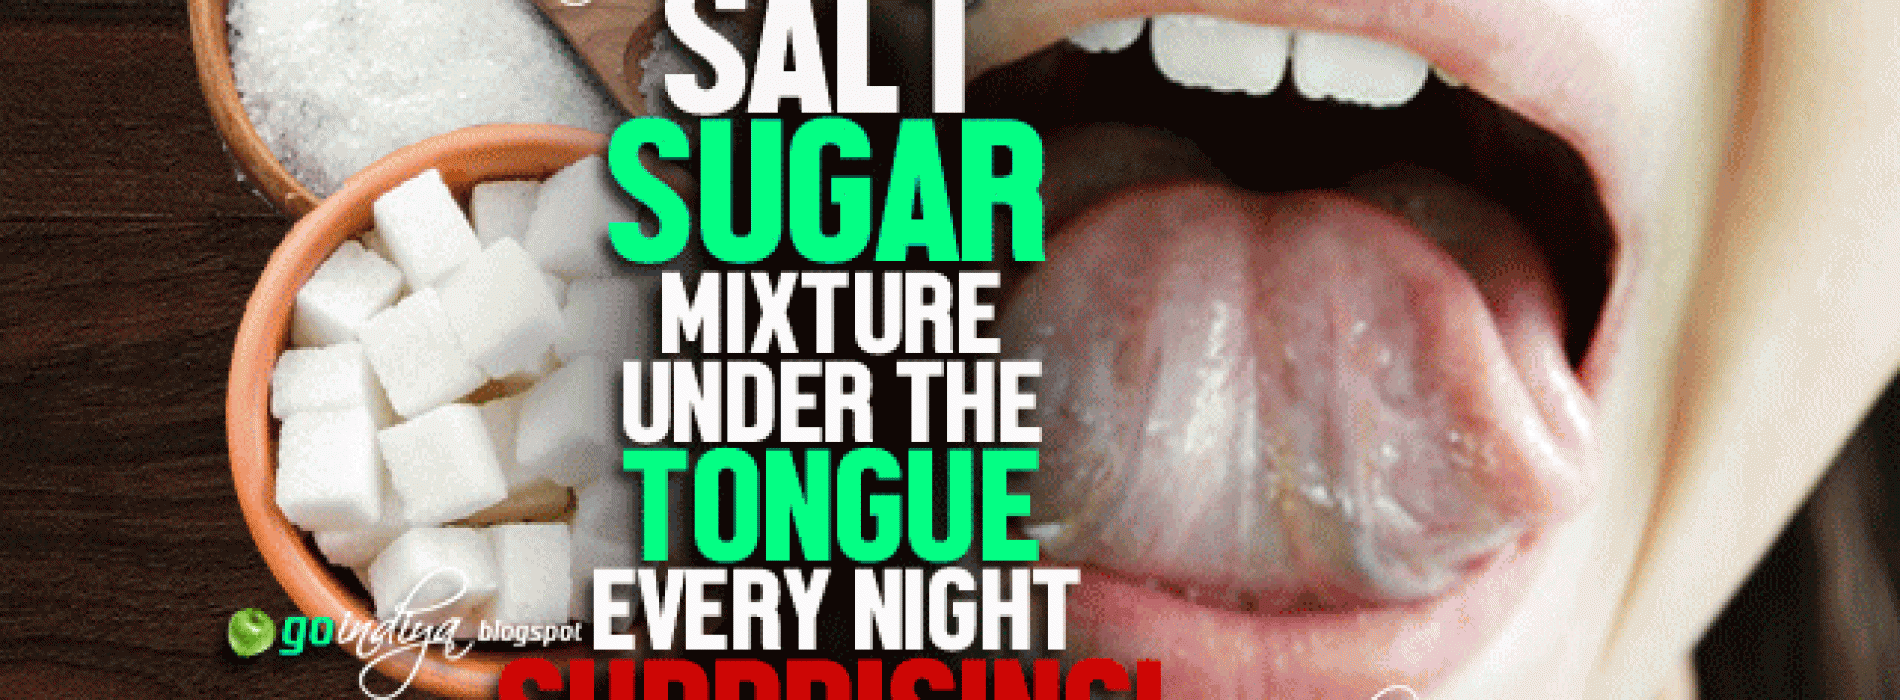 Ontdek de kracht van het plaatsen van zout en suiker onder je tong